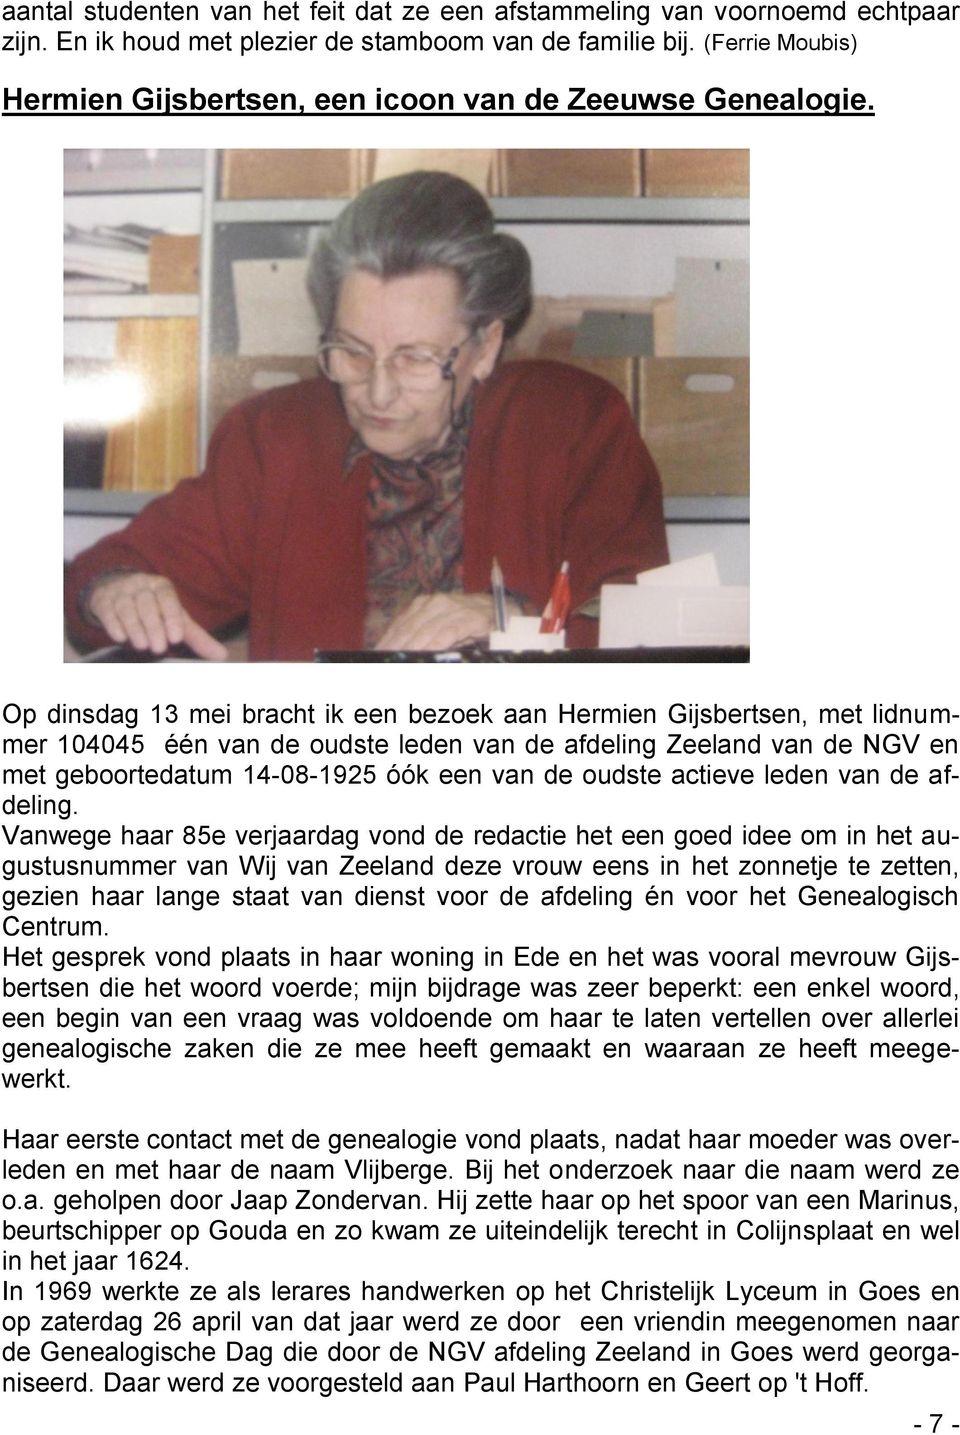 Op dinsdag 13 mei bracht ik een bezoek aan Hermien Gijsbertsen, met lidnummer 104045 één van de oudste leden van de afdeling Zeeland van de NGV en met geboortedatum 14-08-1925 óók een van de oudste